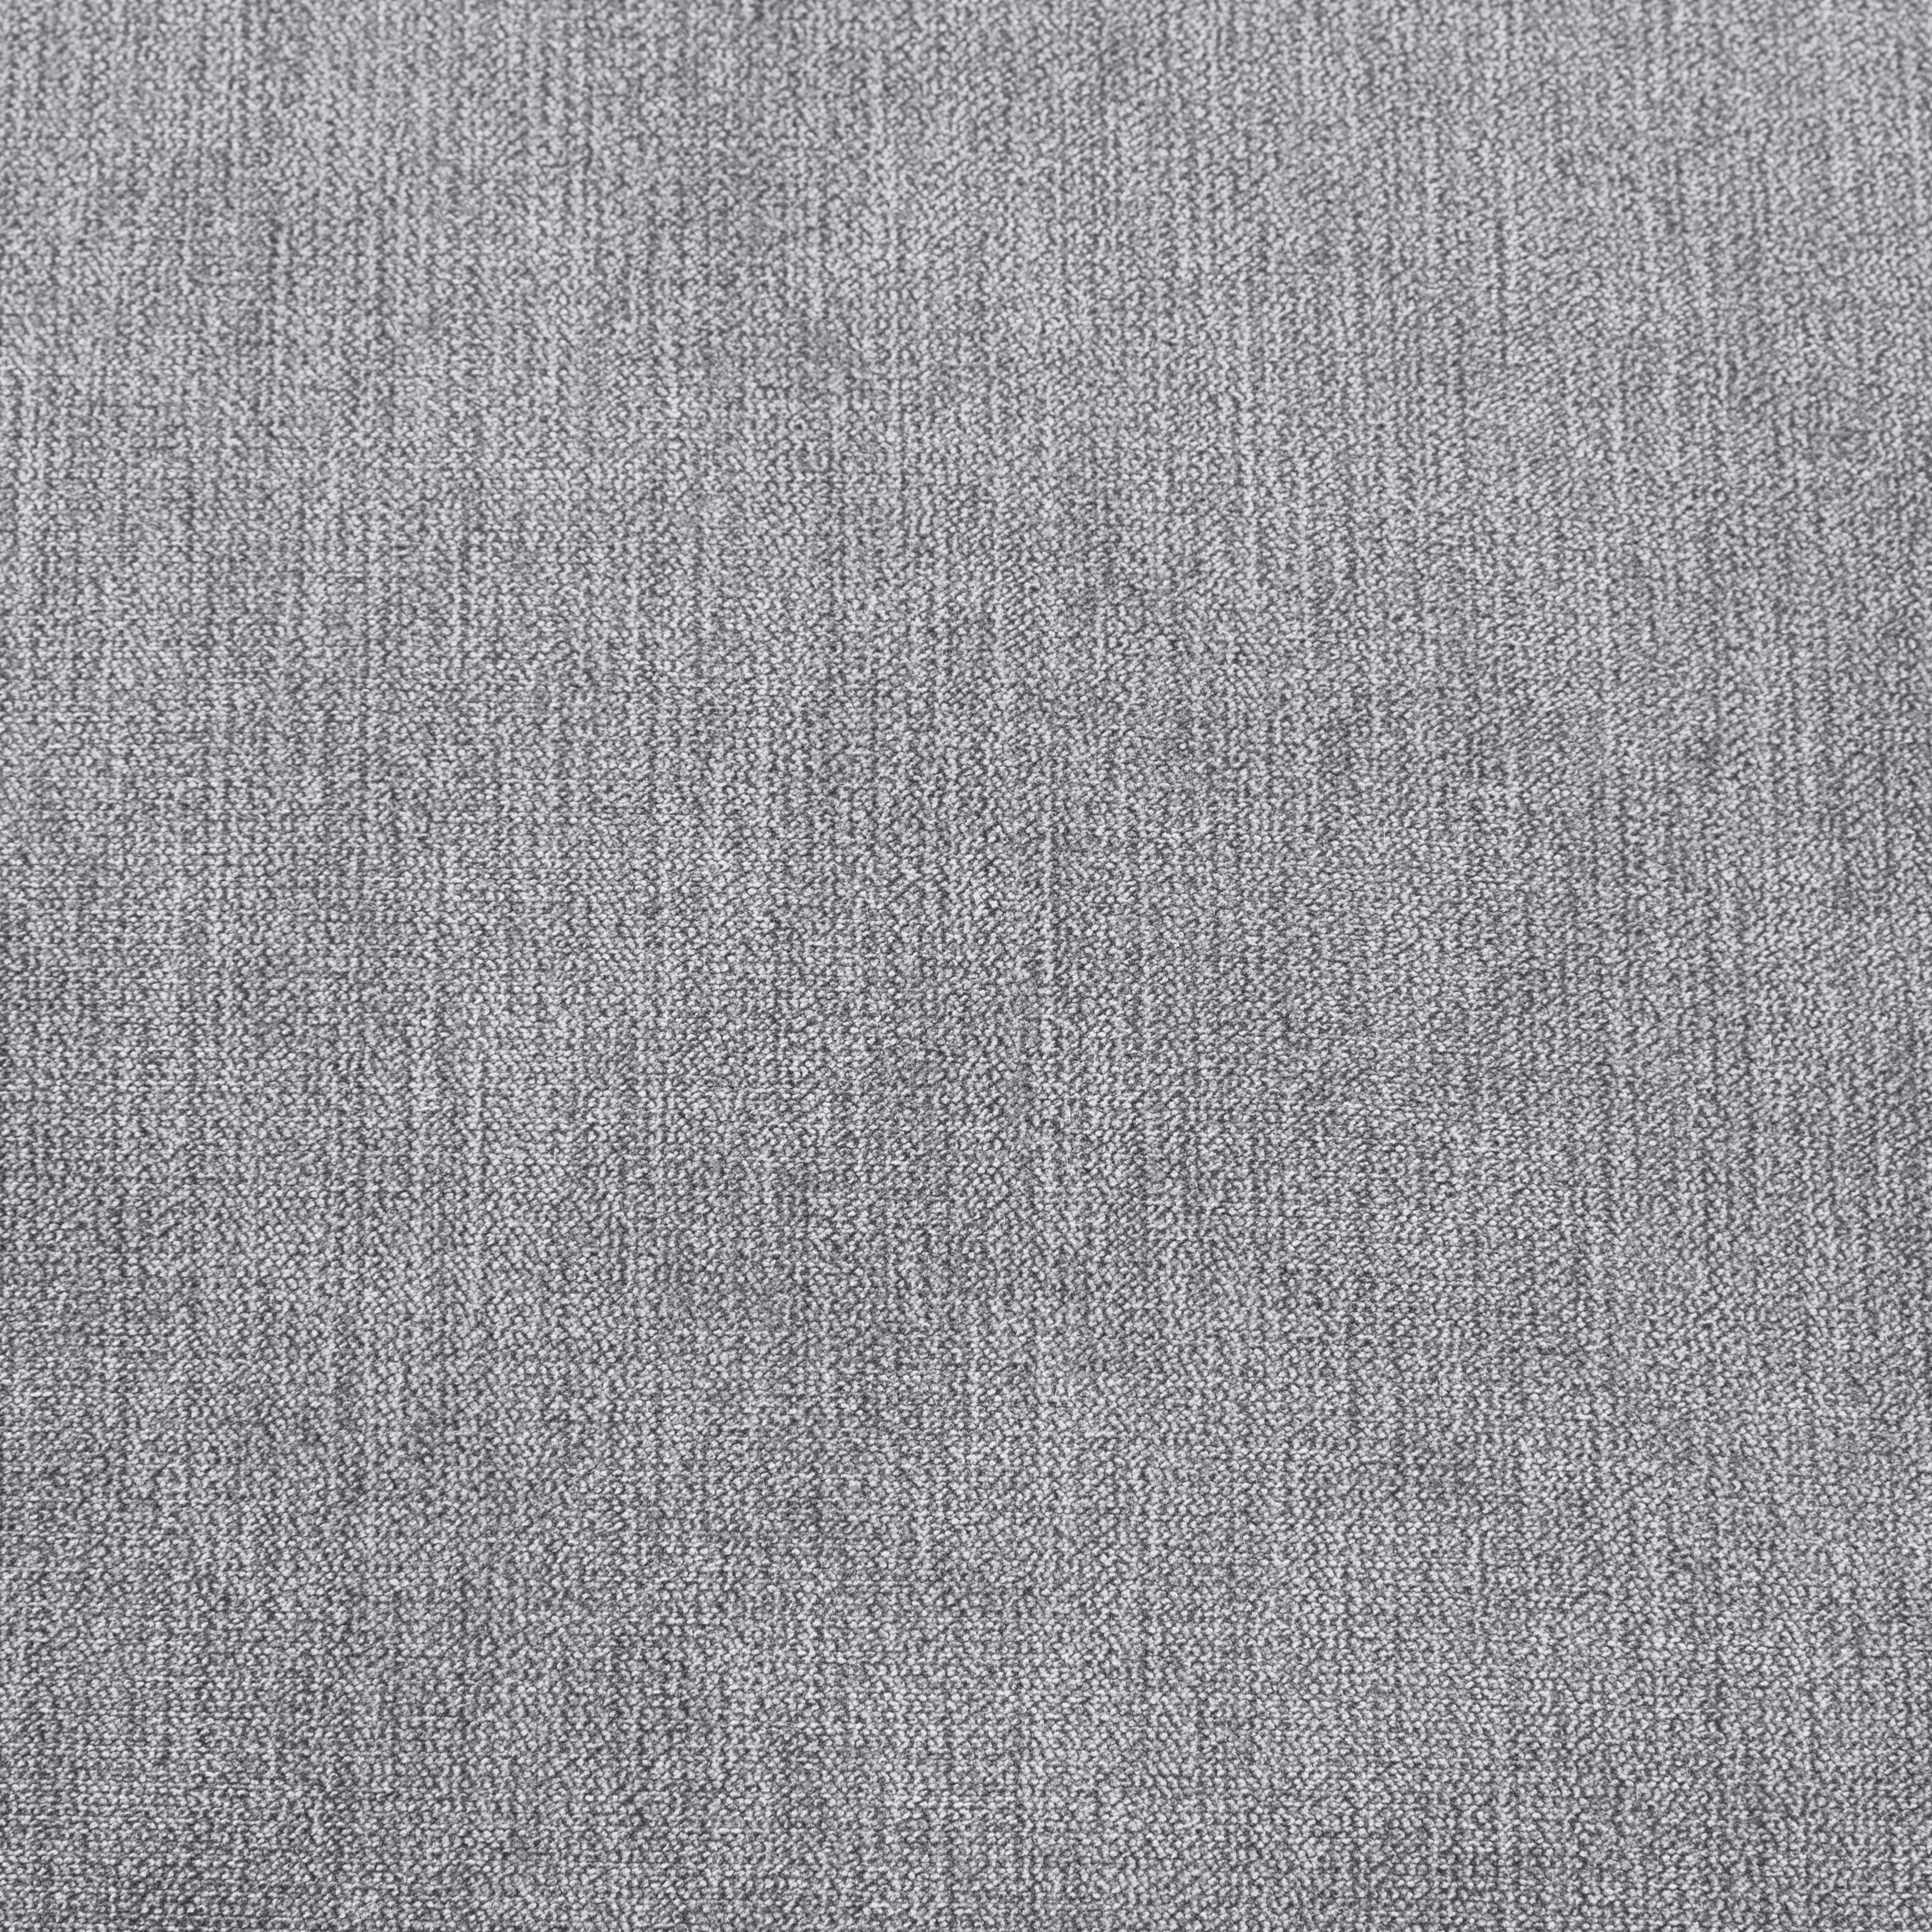 ROHOVÁ SEDAČKA, textil, šedá - šedá/černá, Design, textil/plast (244/157cm) - Carryhome